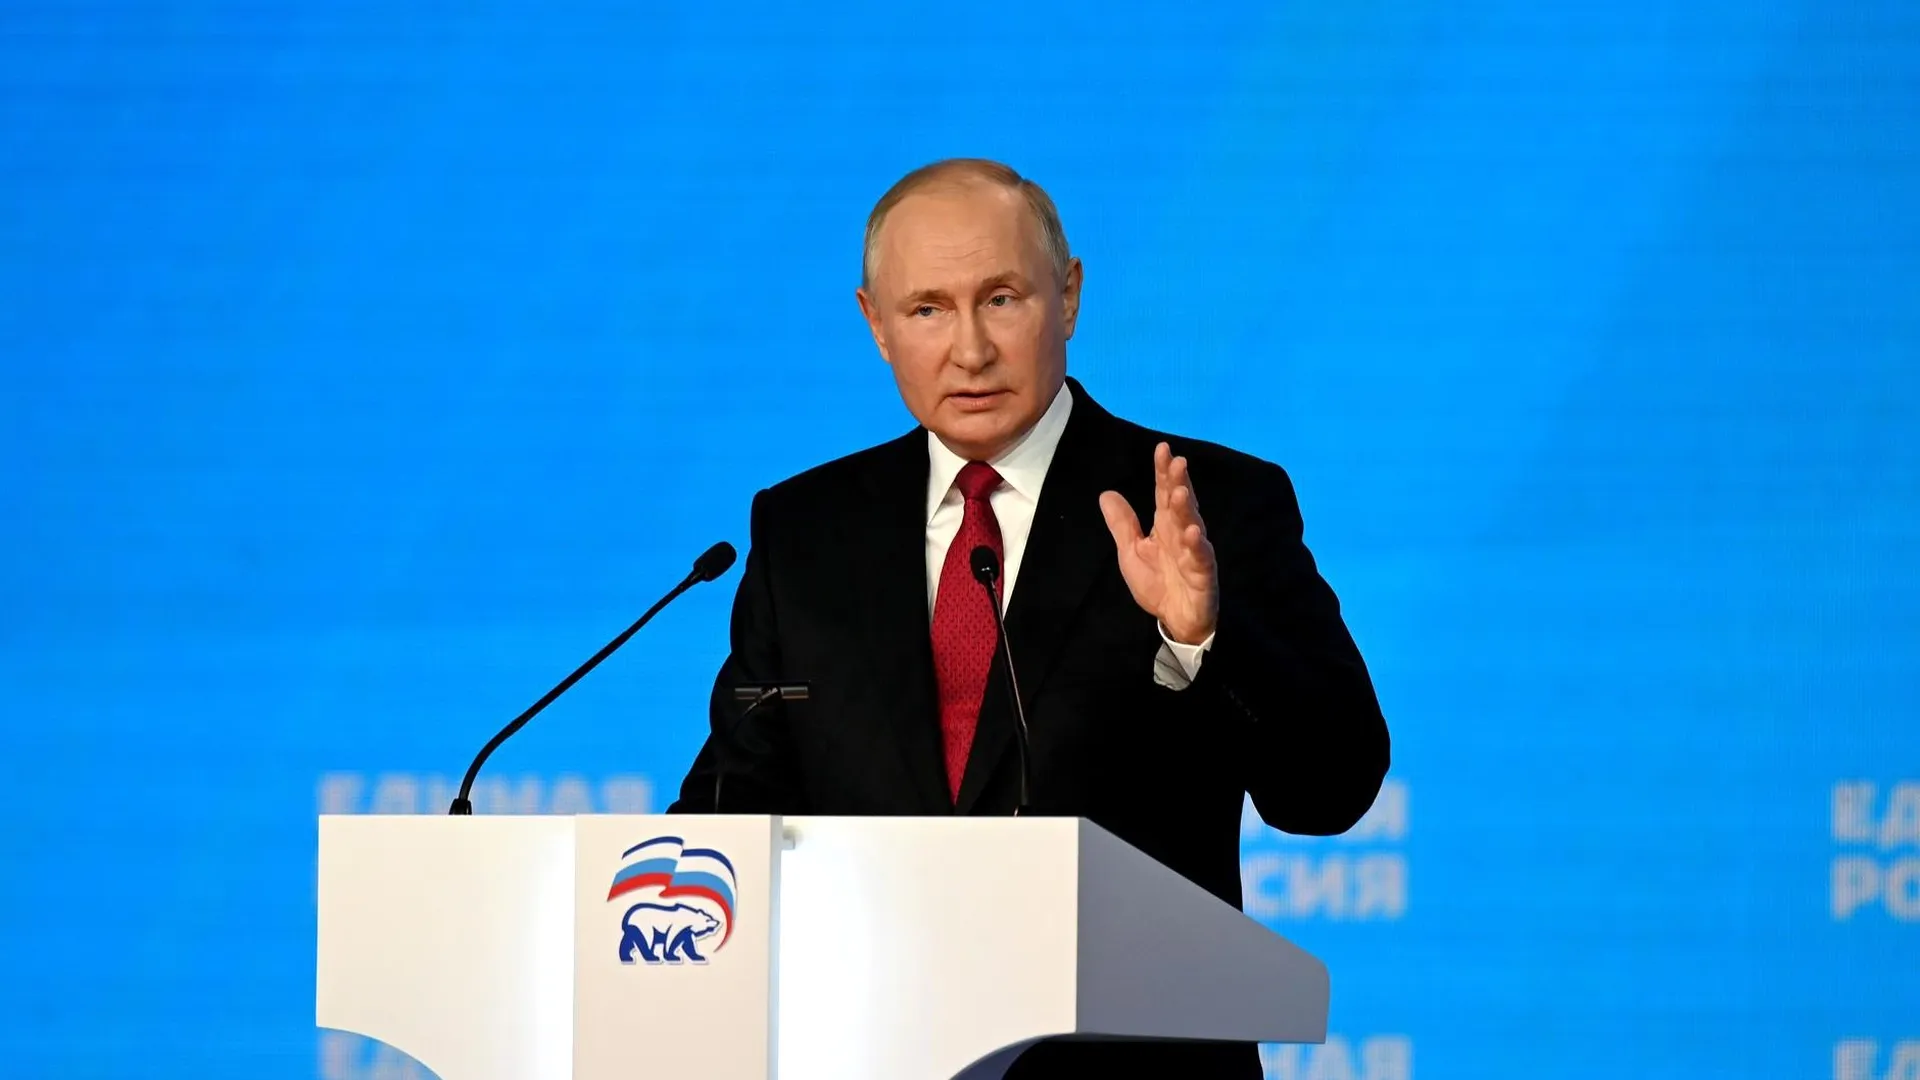 Политолог Евстафьев считает, что после инаугурации Путина для Запада наступает тяжелый период осмысления